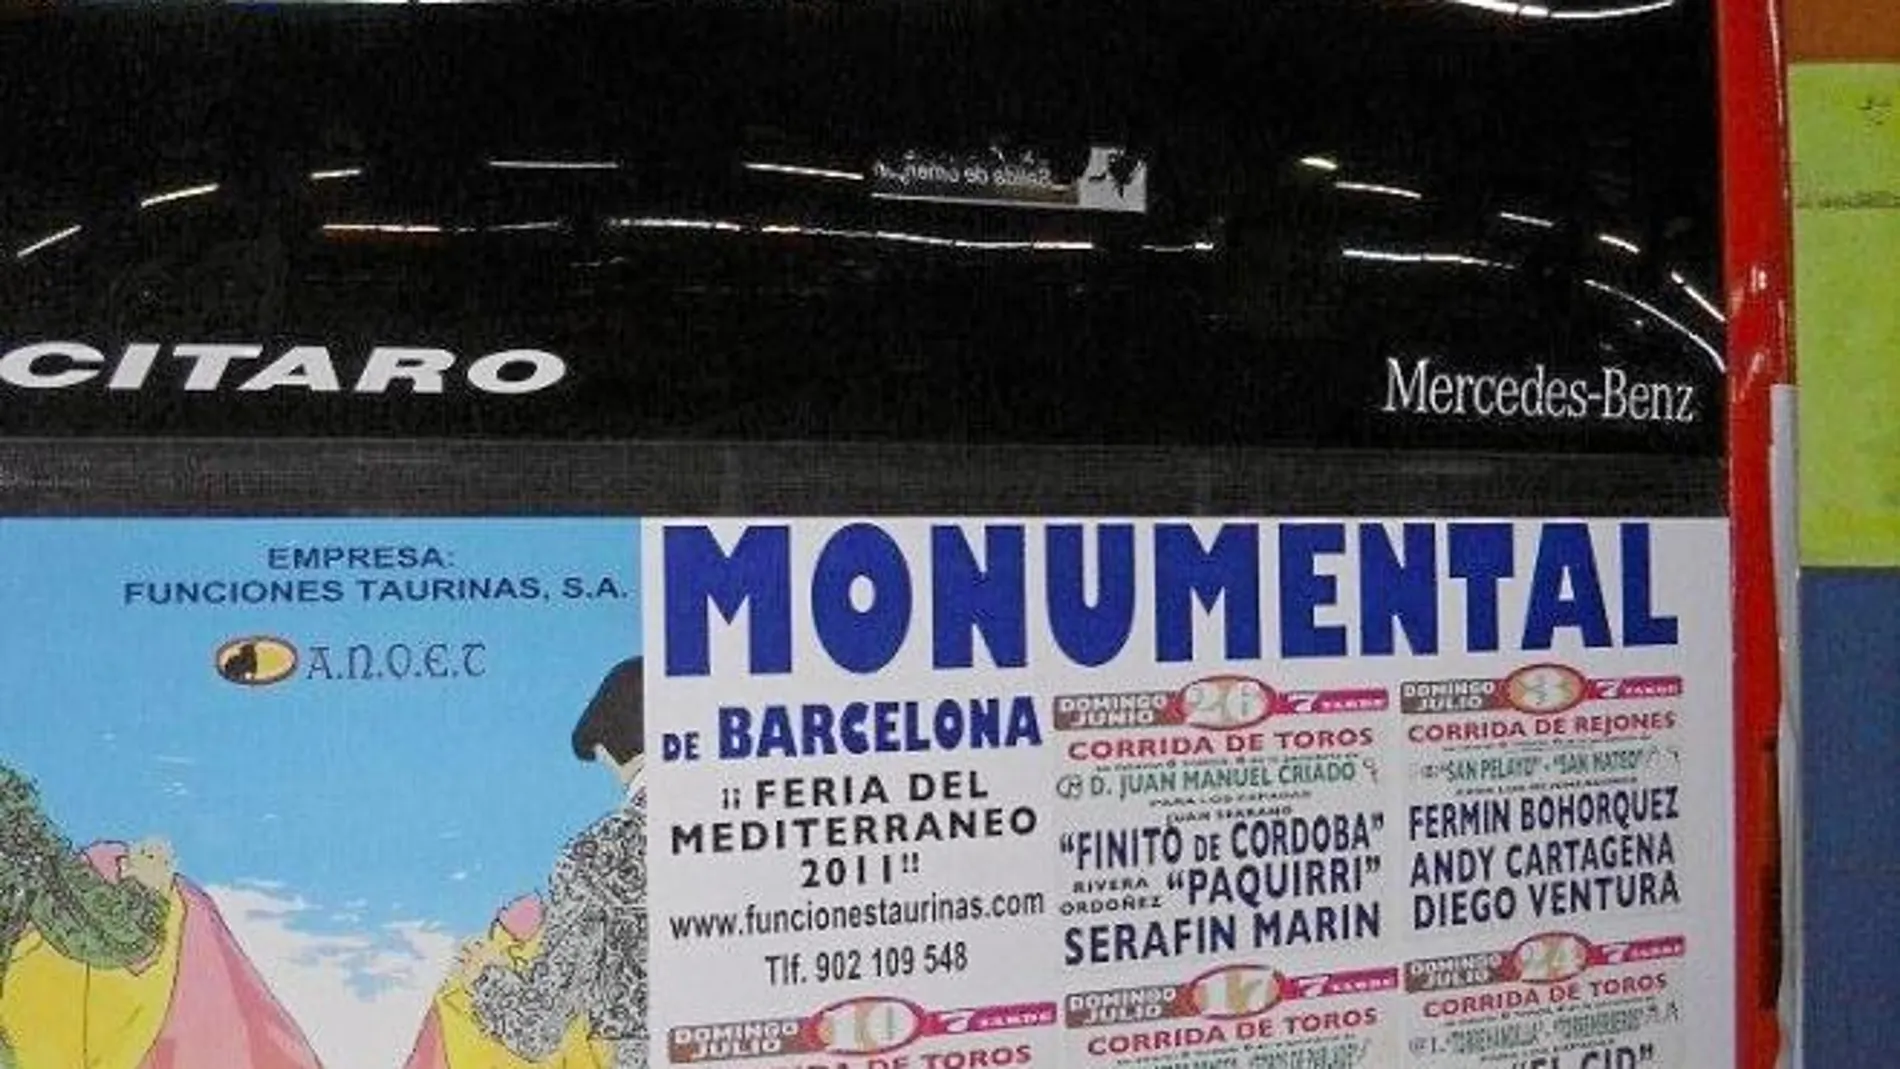 Imagen del cartel promocional de la Feria del Mediterráneo en un autobús urbano para impulsar la Fiesta